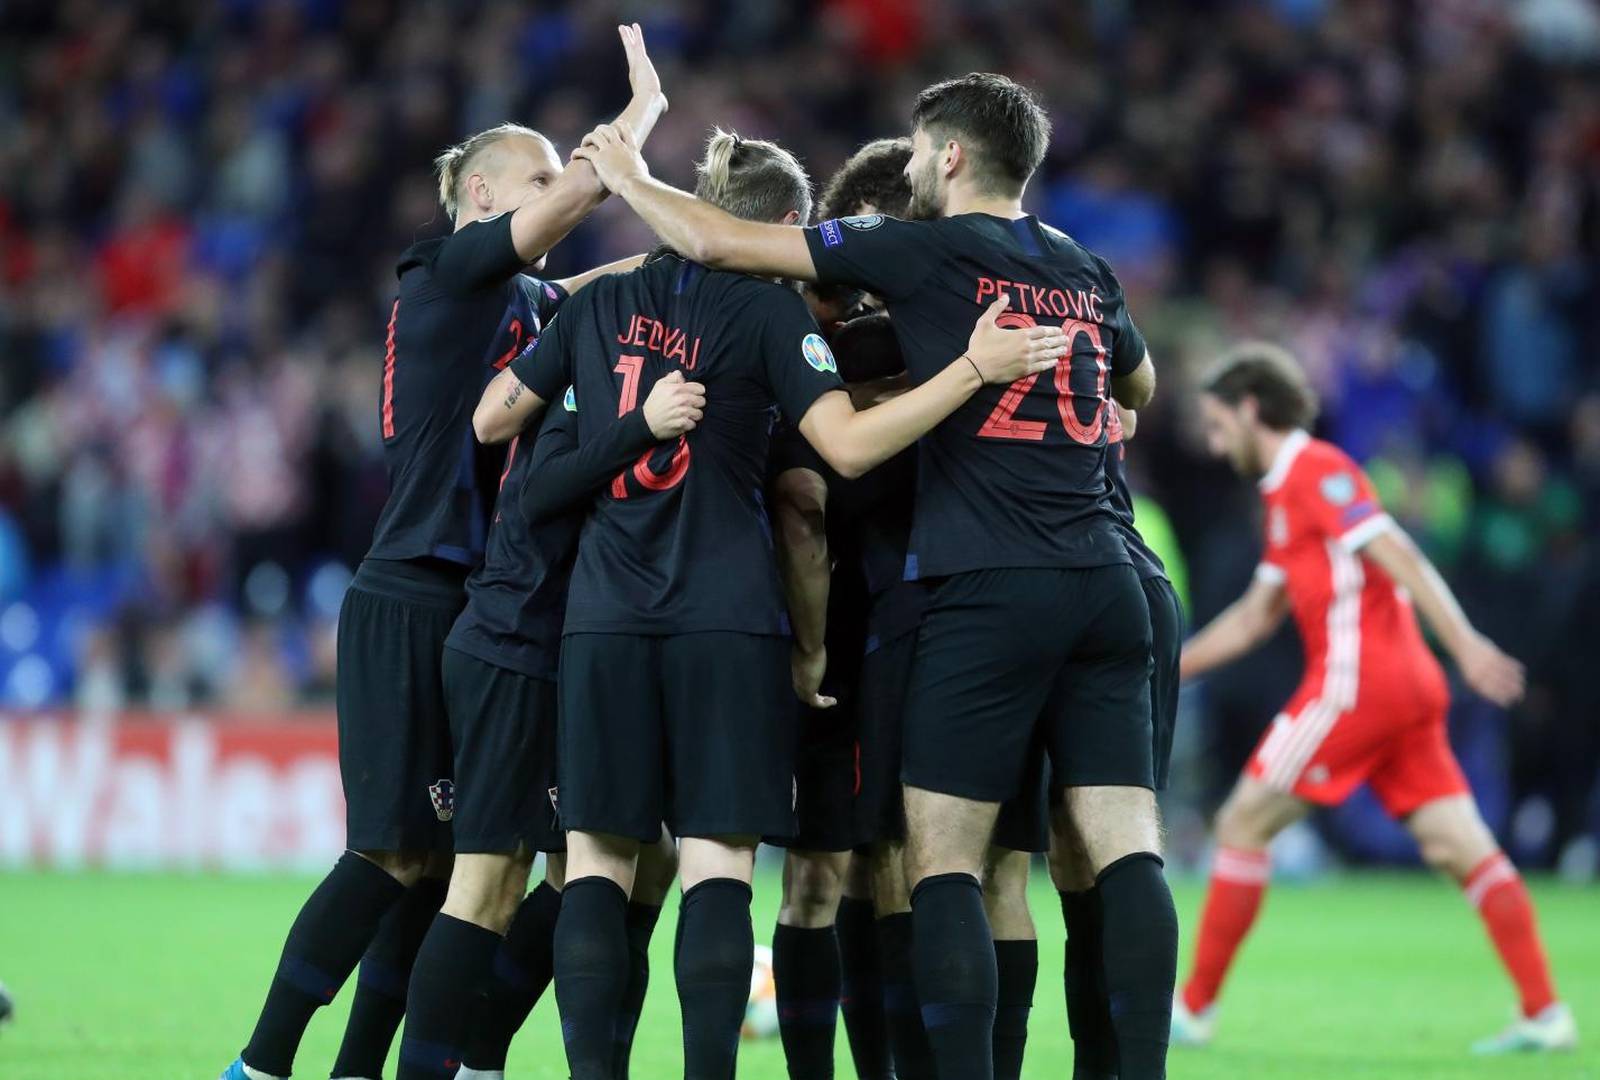 Susret Walesa i Hrvatske u kvalifikacijama za Europsko prvenstvo